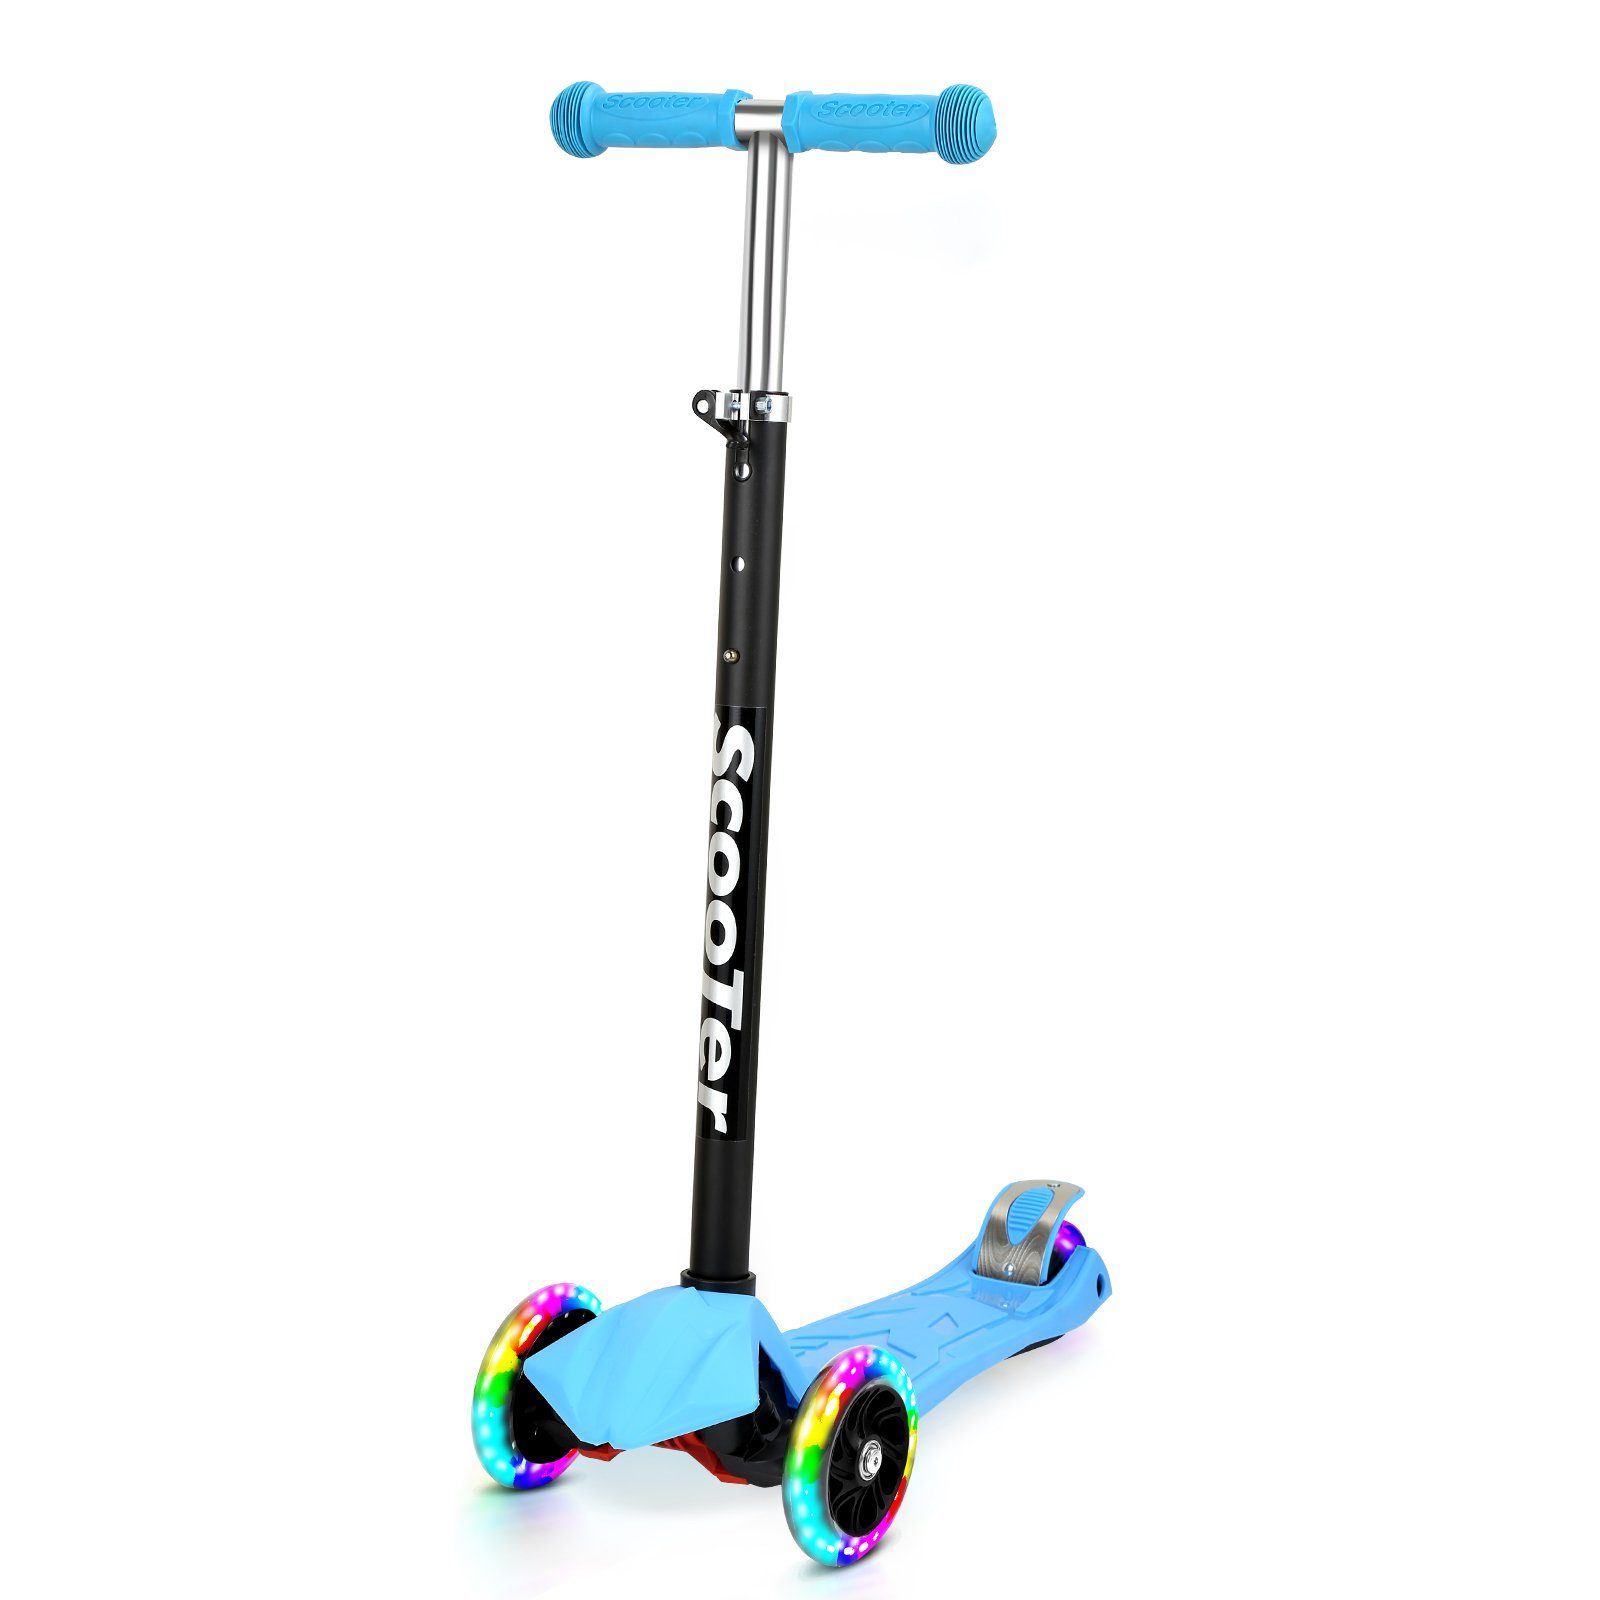 Gimisgu Scooter Kinderroller Tretroller Cityroller LED Räder Höhenverstellbar Blau